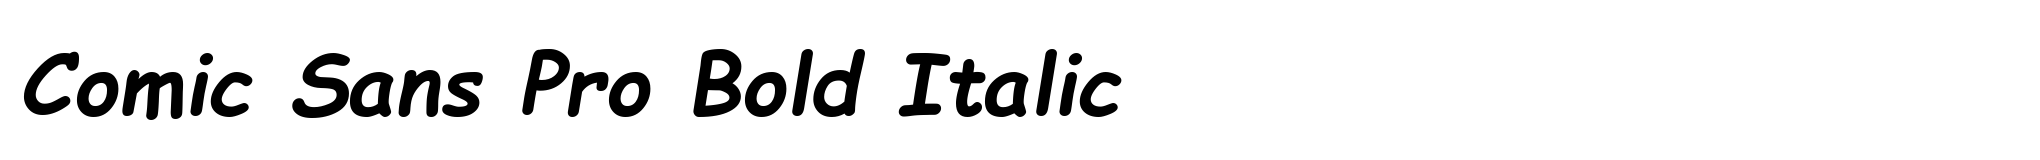 Comic Sans Pro Bold Italic image